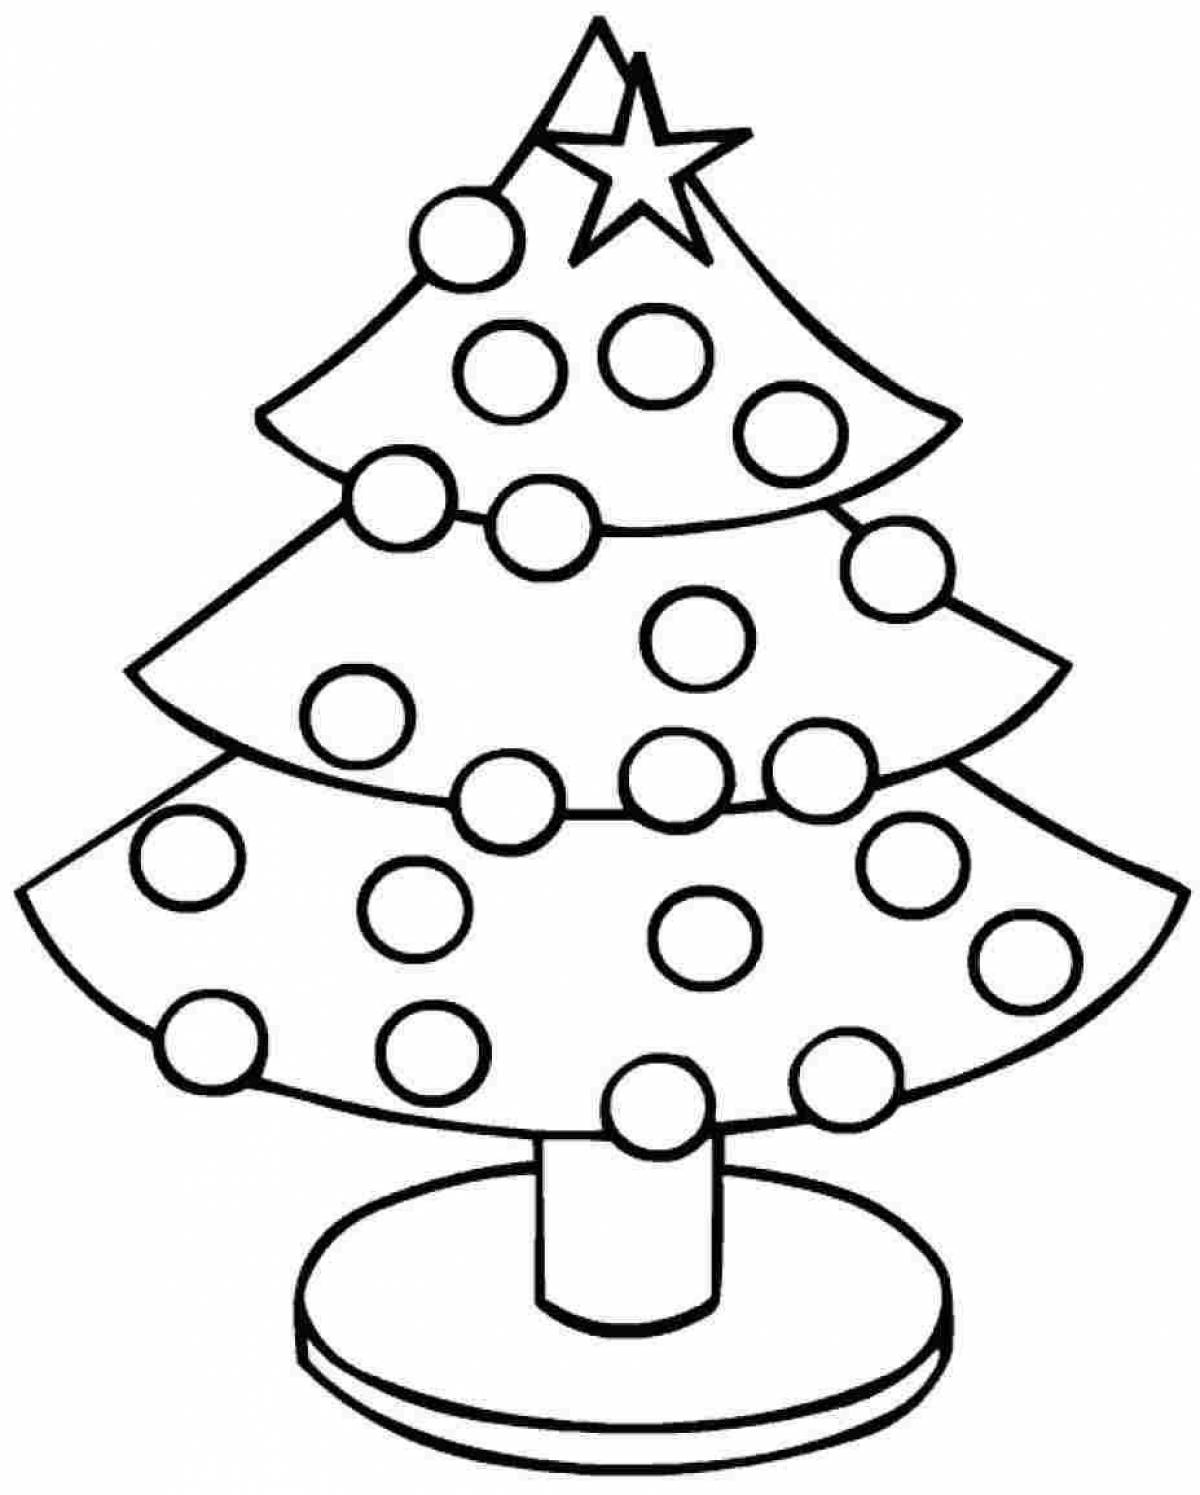 Анимированная страница раскраски рождественской елки